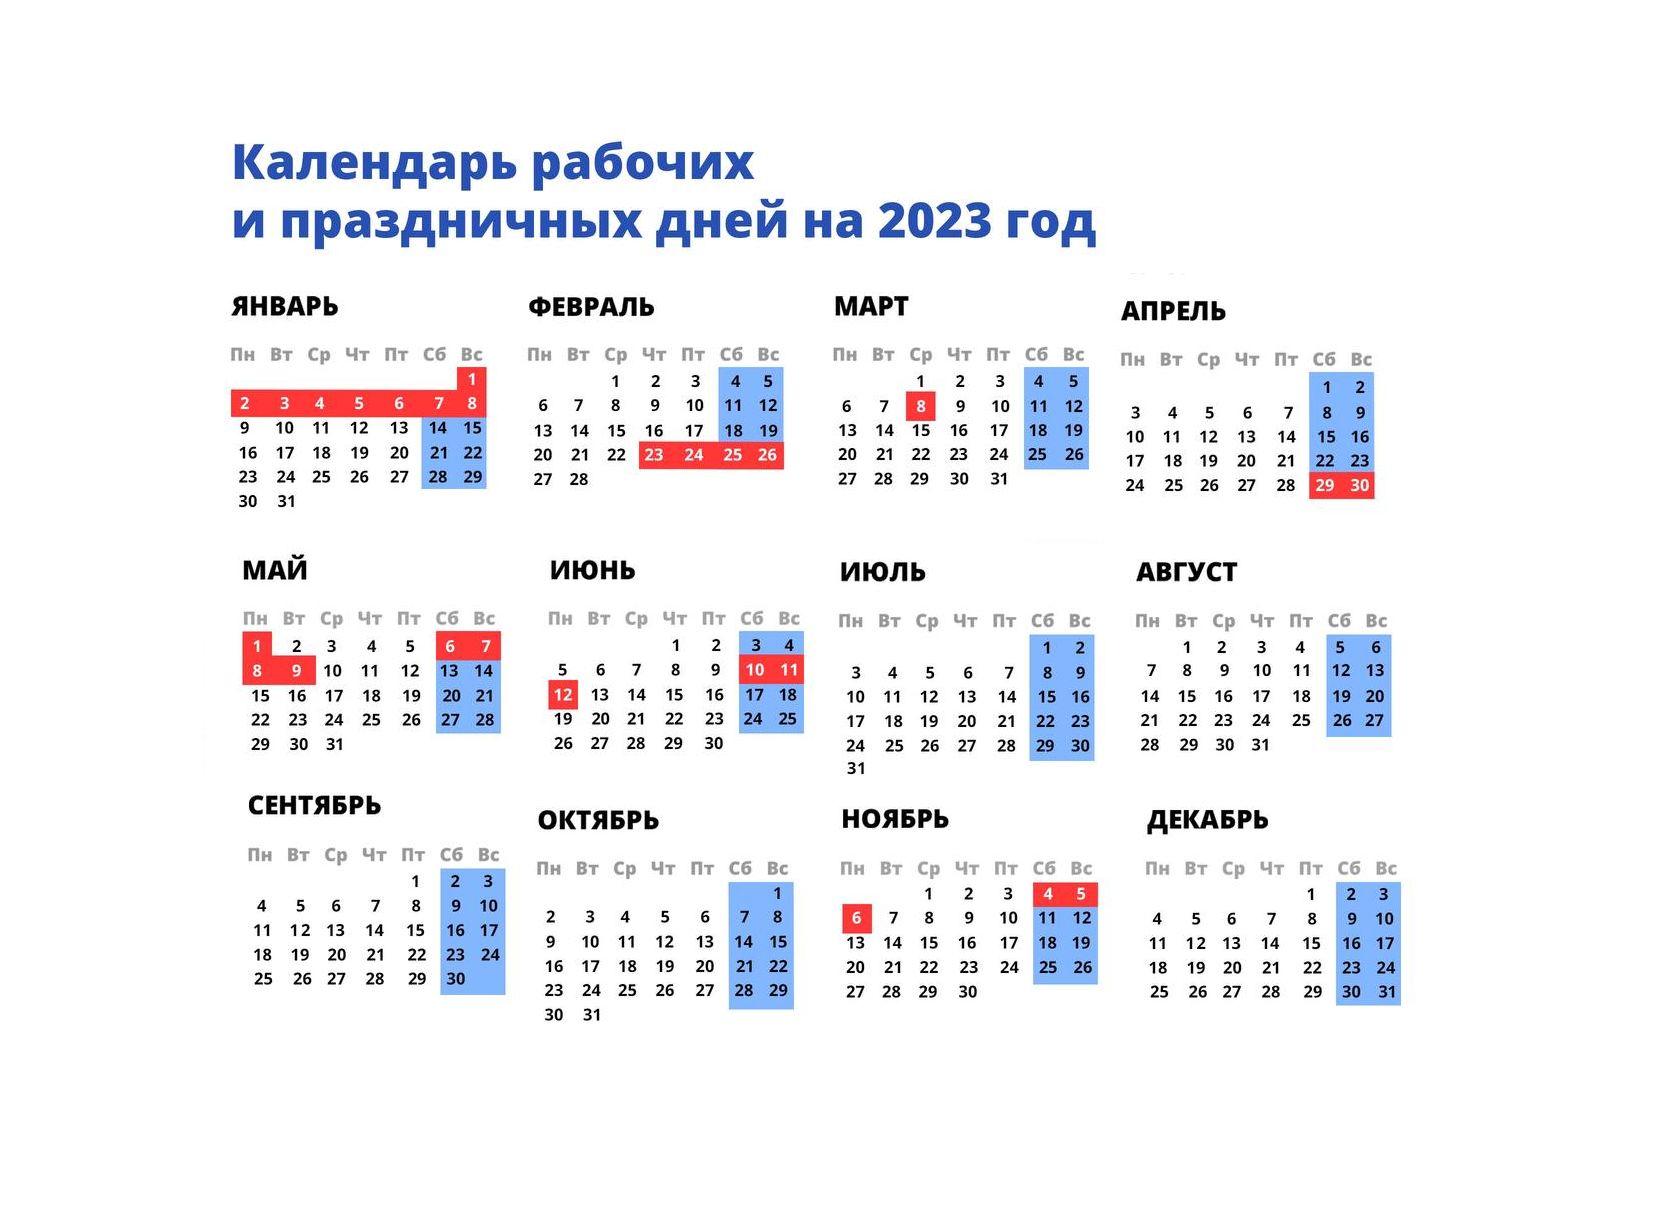 Календарь новогодних праздников 2023 2024. Праздничные дни в 2022 году в России календарь. Календарь выходных дней на 2023 год. Праздничные дни на новый год 2023. Праздники в 2023 календарь нерабочих дней.